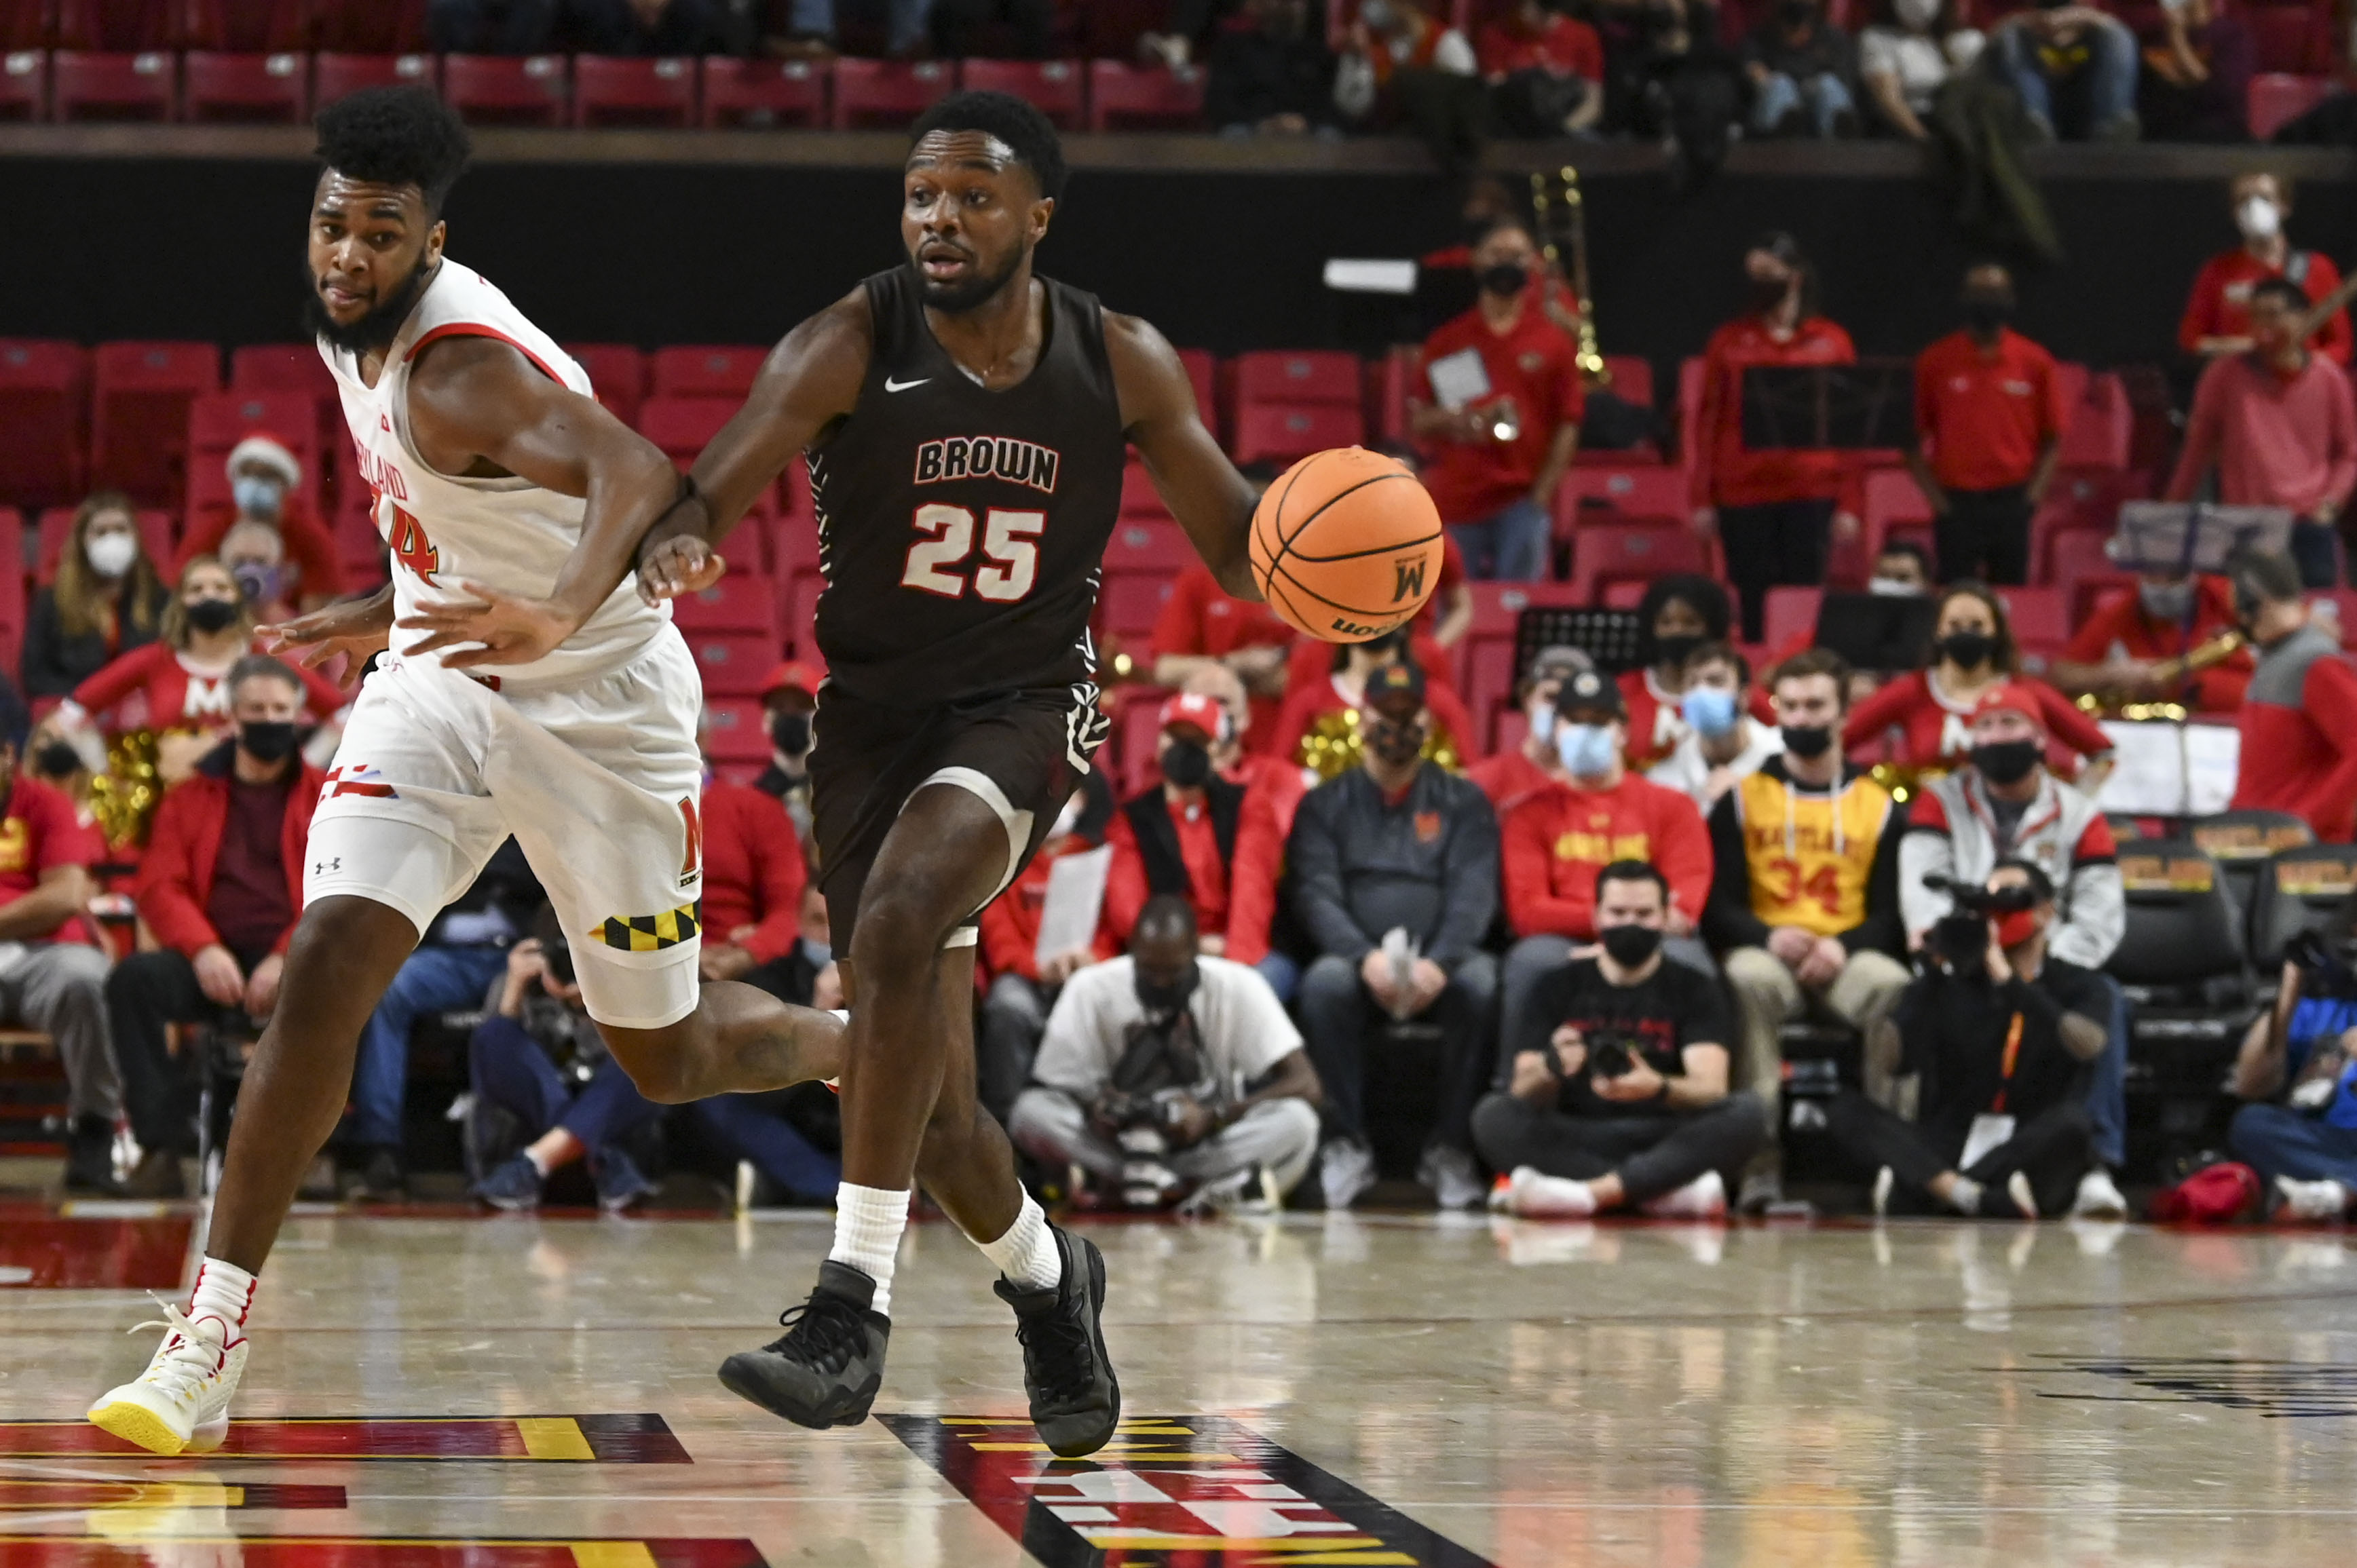 NCAA Basketball: Brown at Maryland